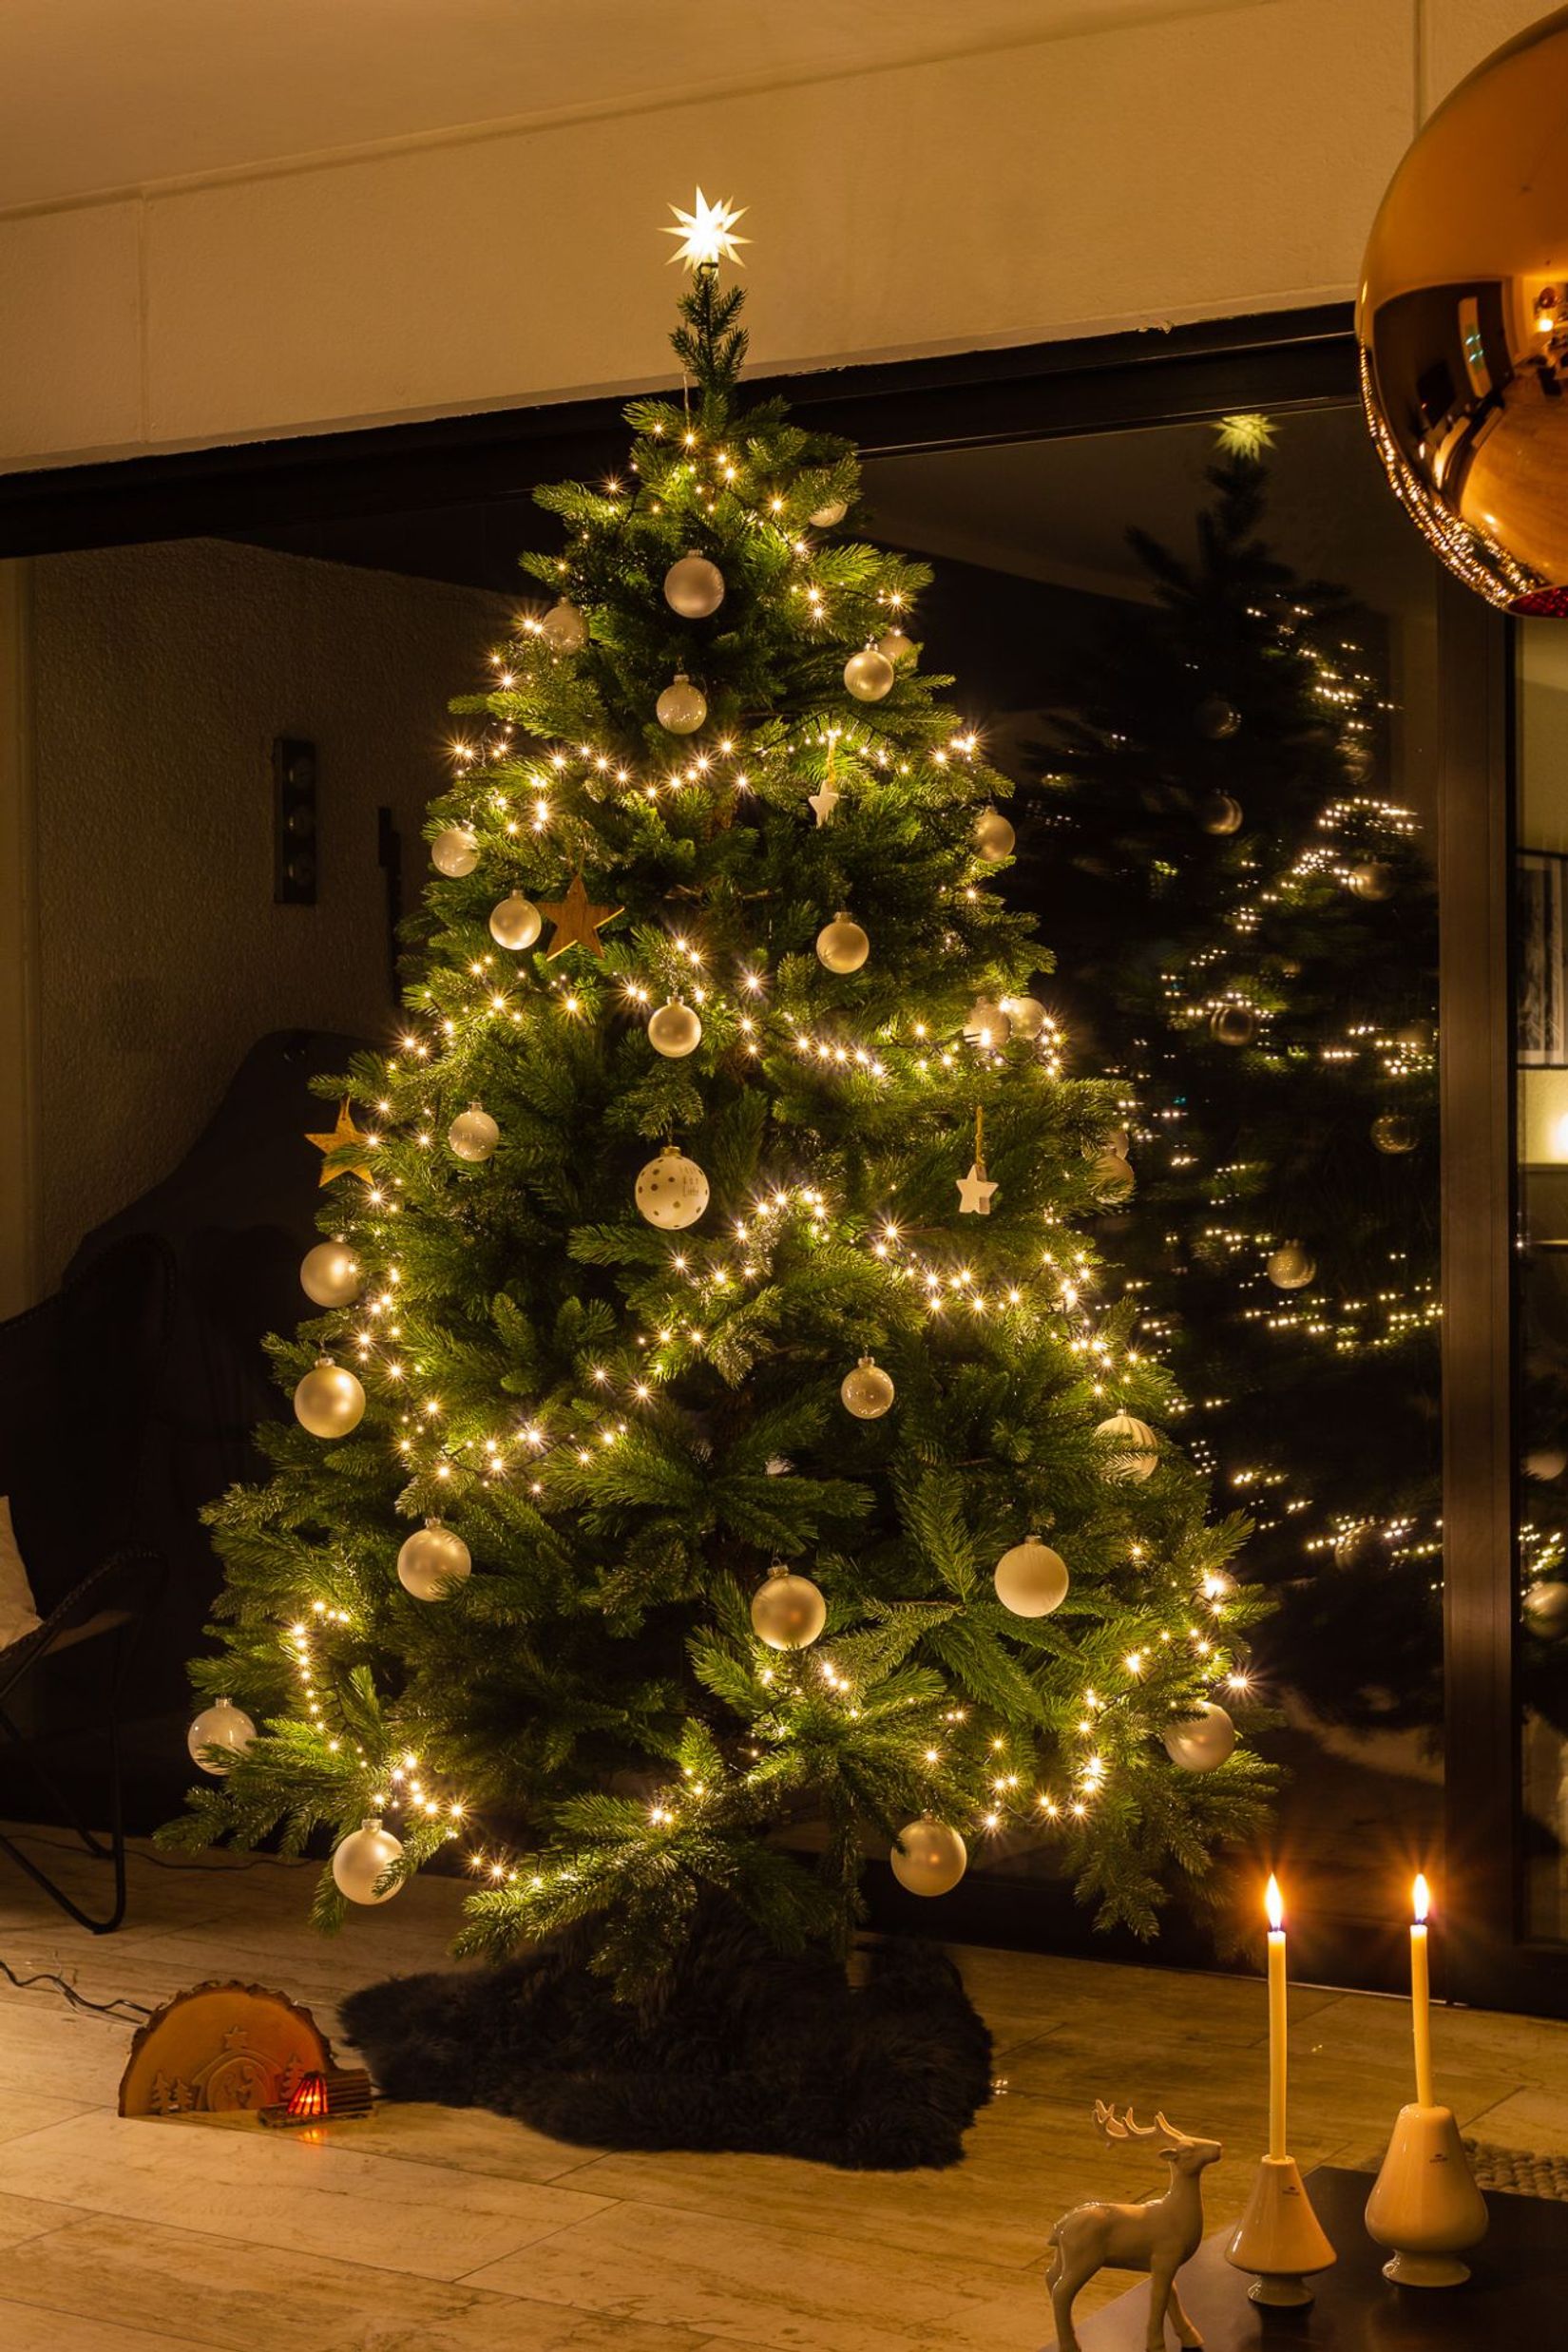 Künstlicher Weihnachtsbaum Premium Nordmanntanne, 240 cm hoch